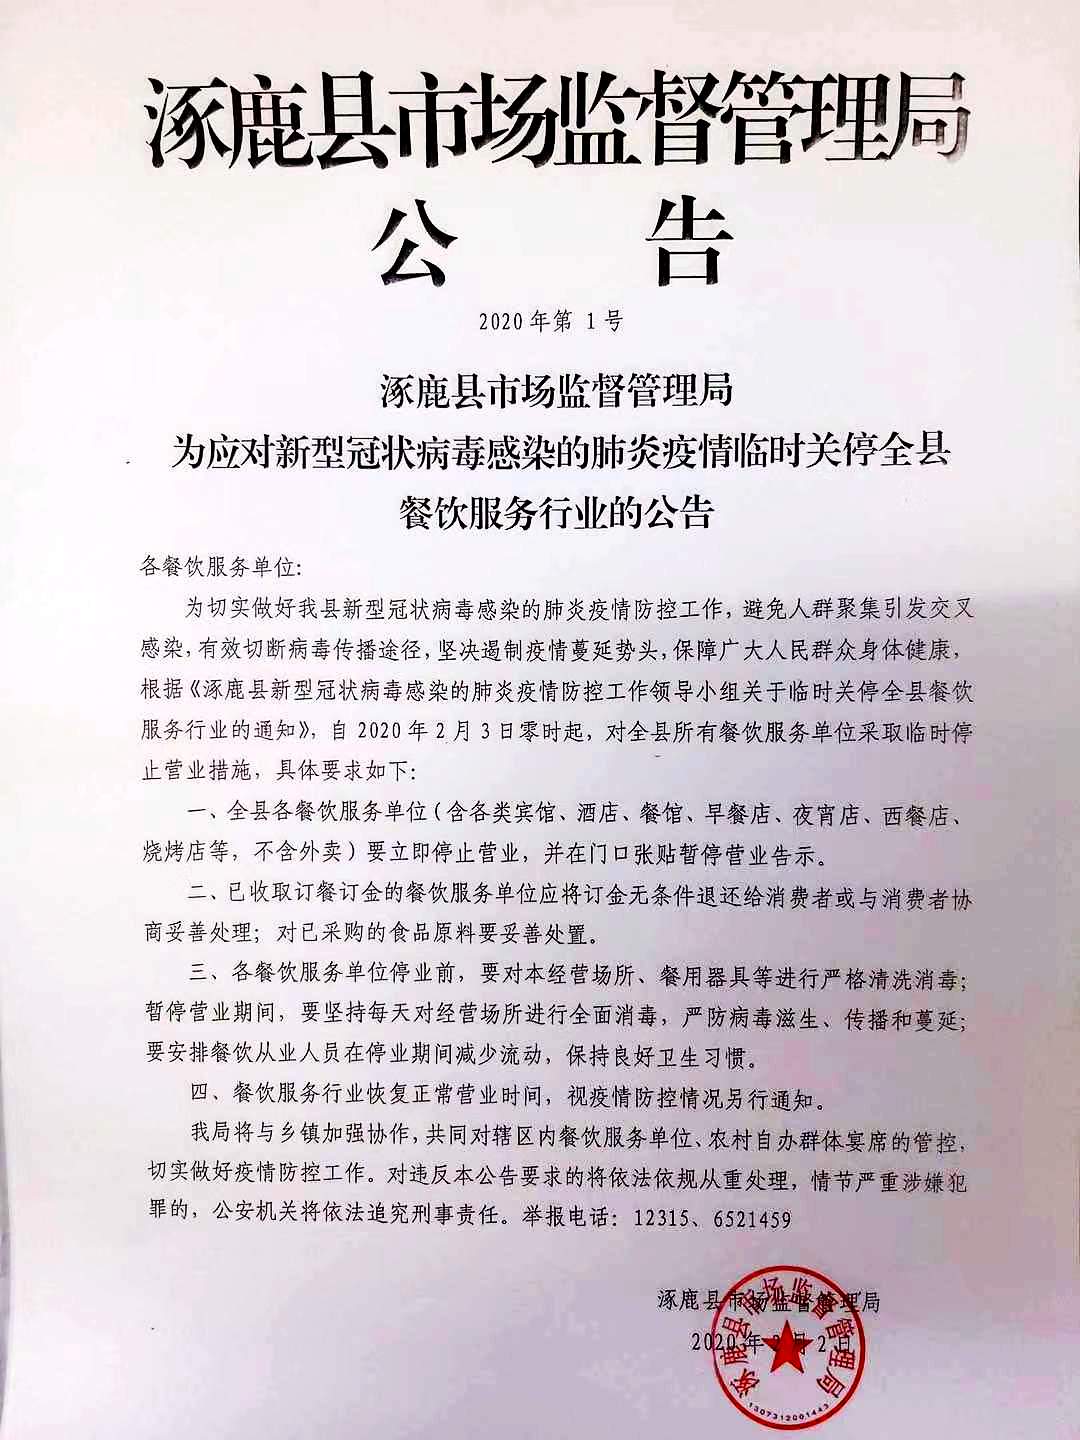 涿鹿县临时关停全县餐饮服务行业的公告